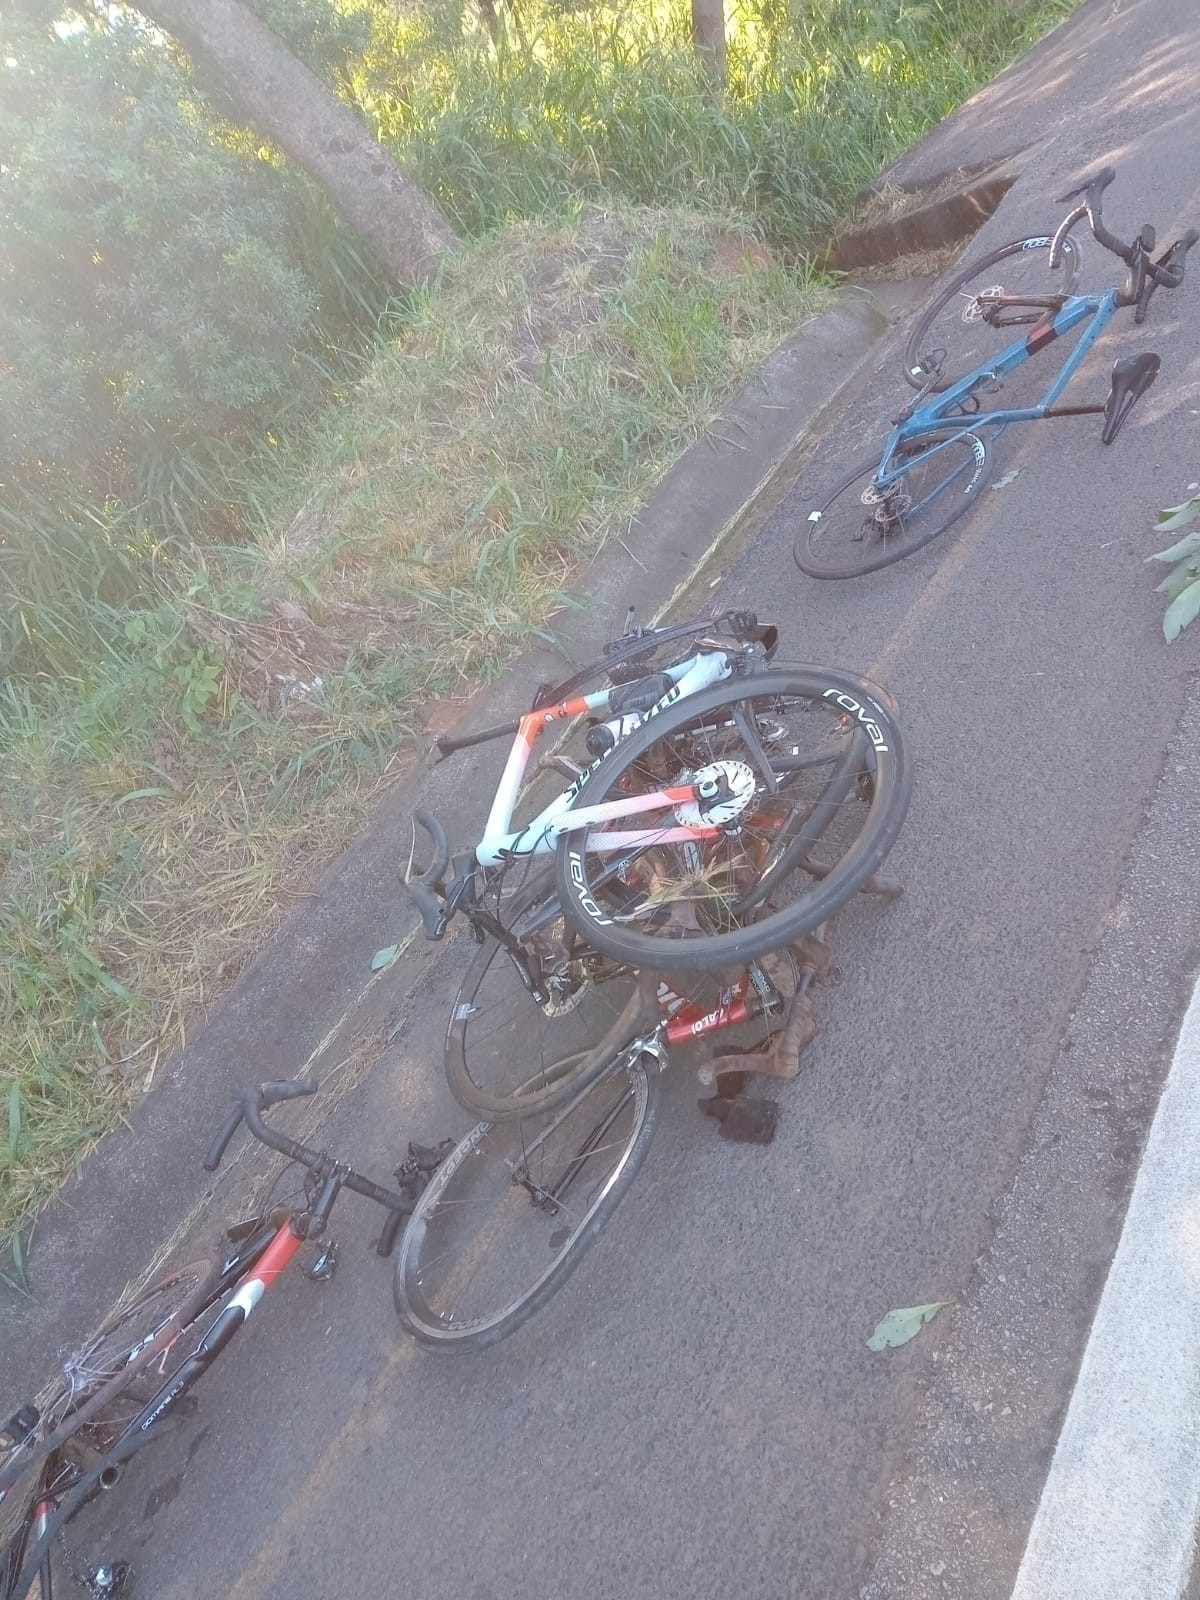 Motorista da van suspeito de atropelar grupo de ciclistas em Paraopeba é levado para delegacia